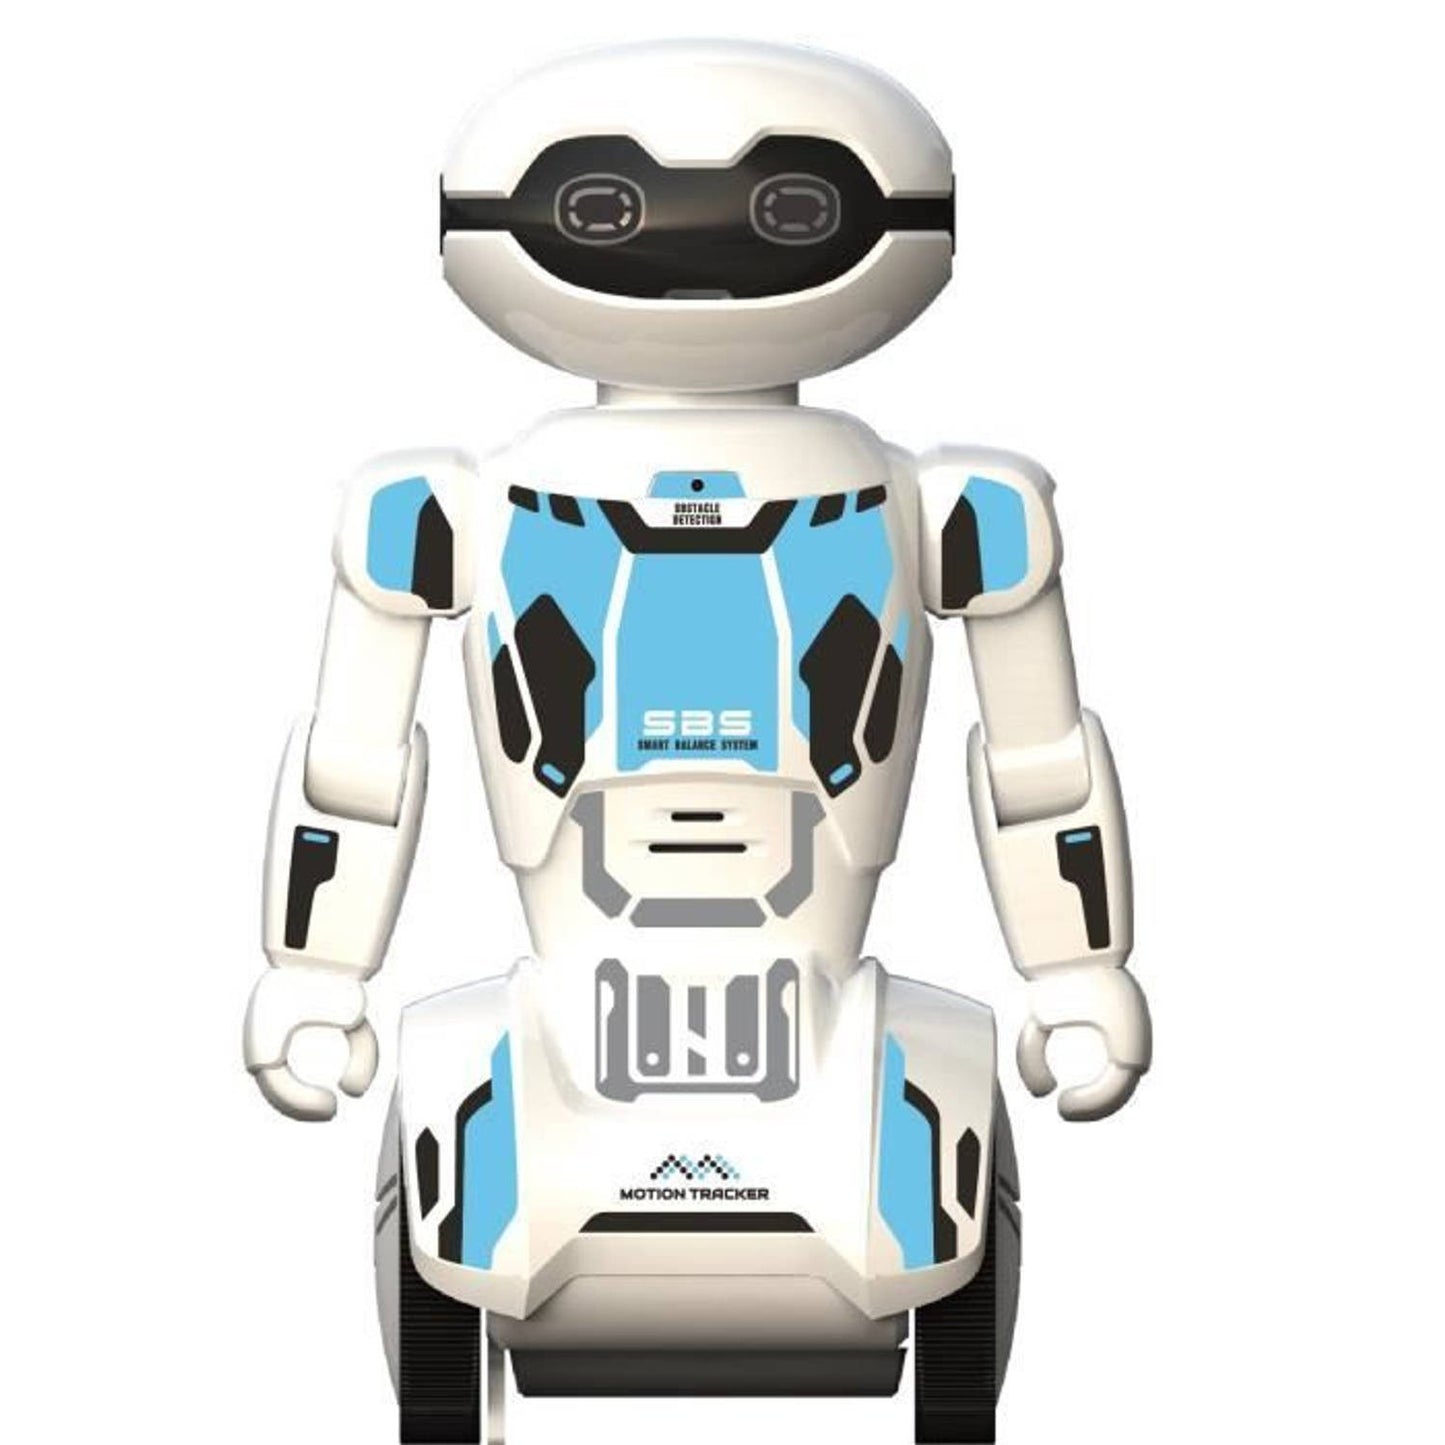 MacroBot Robot inteligent, inregistrare vocala si redare, senzor de miscare, telecomanda - albastru